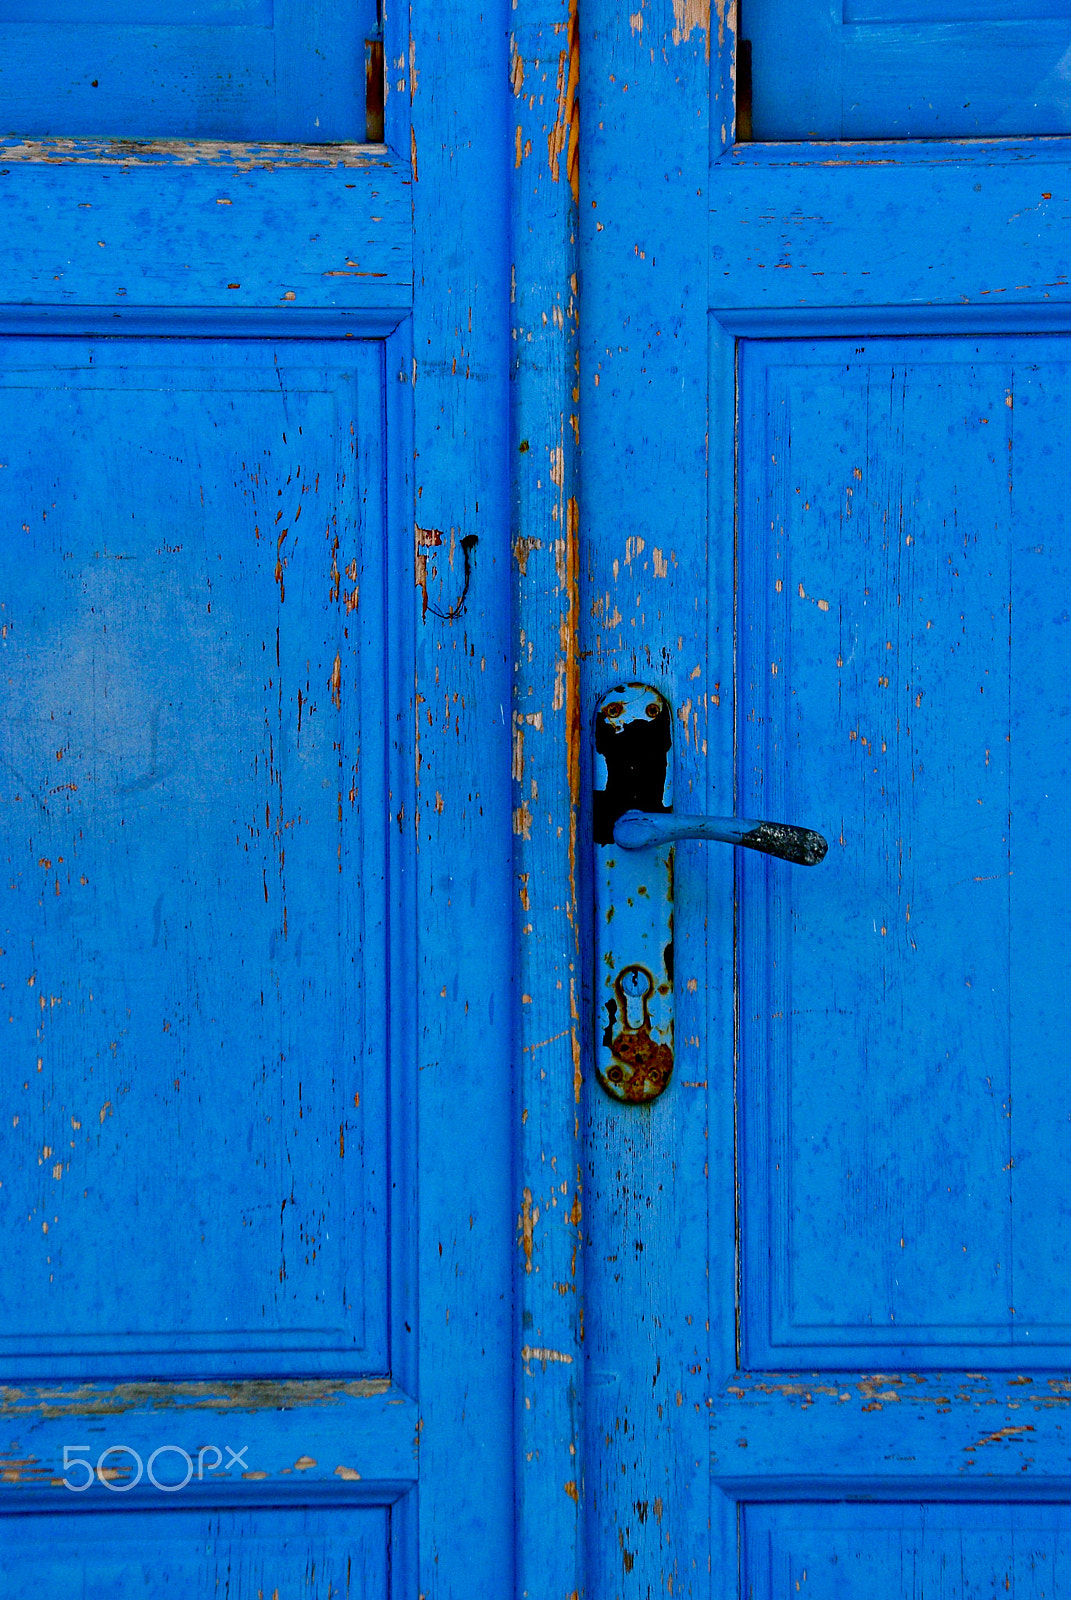 Pentax K10D + Pentax smc DA 18-250mm F3.5-6.3 sample photo. Blue door photography